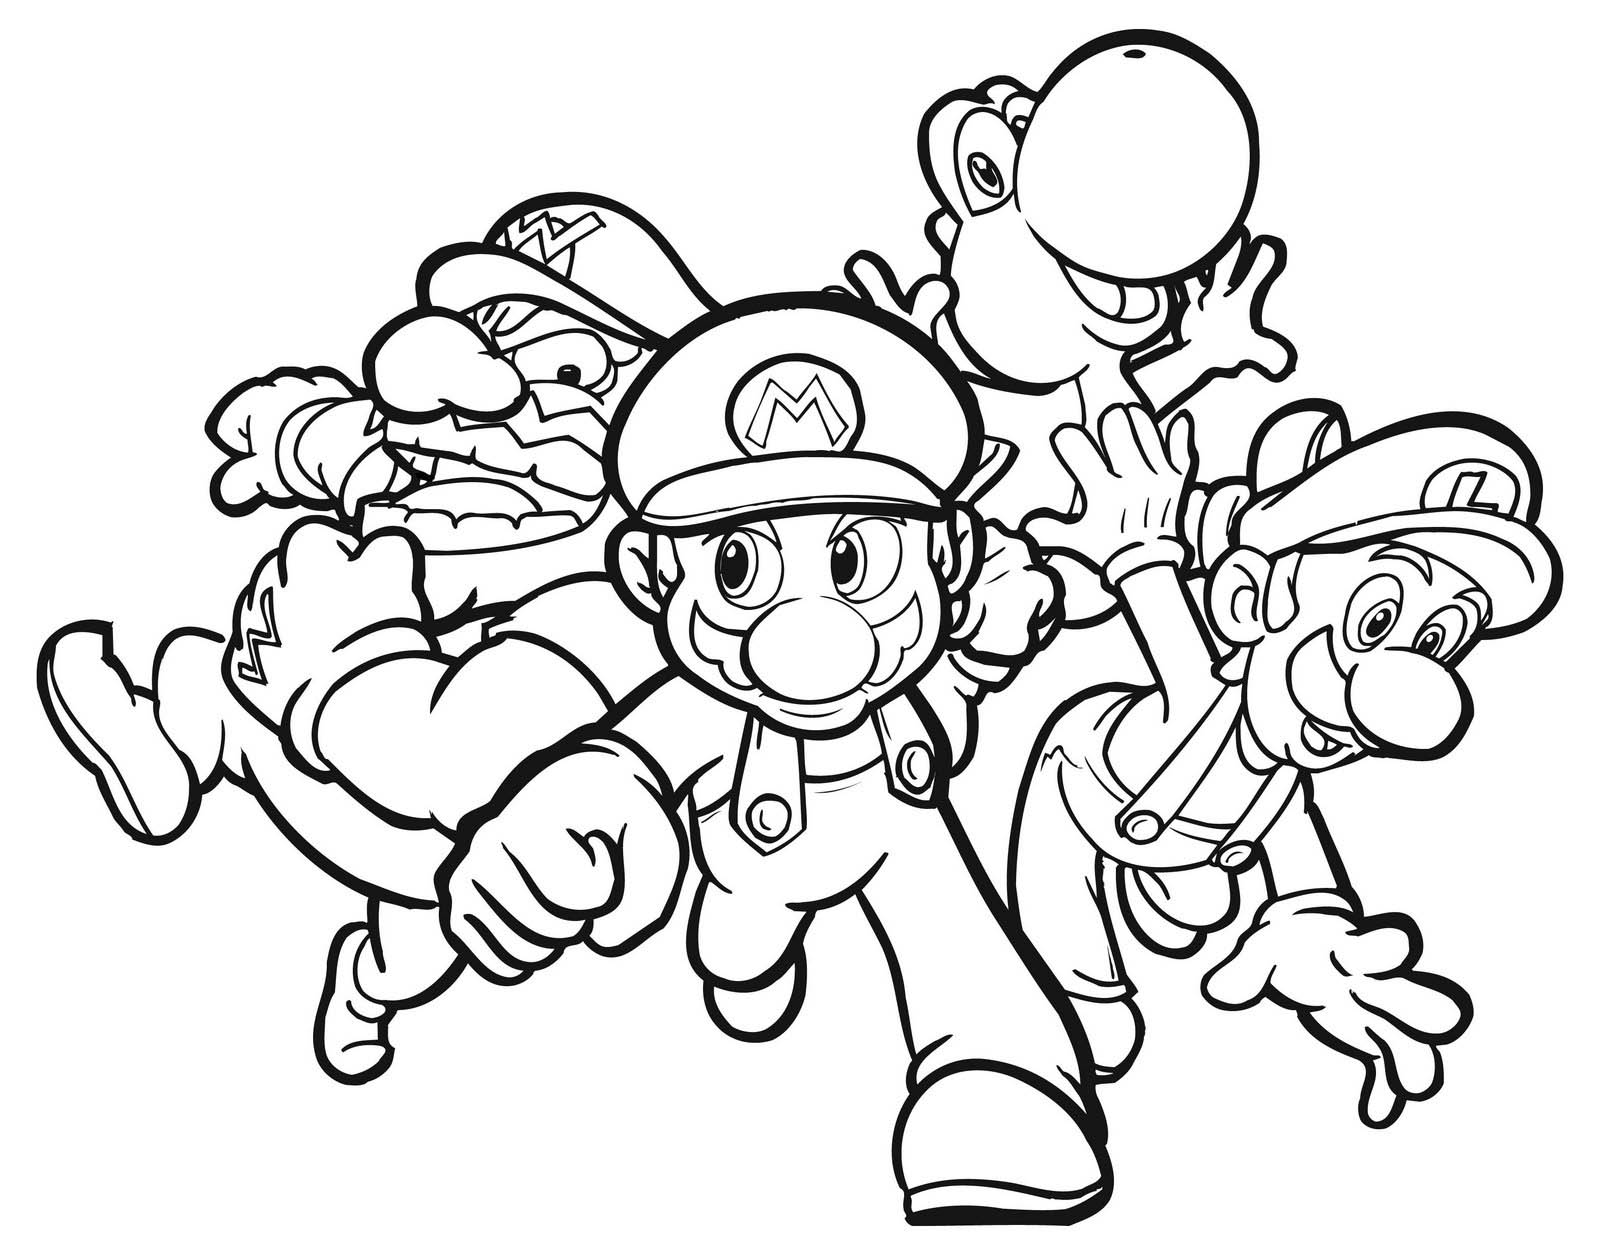  Group Mario coloring pages | Mario Bros games | Mario Bros coloring pages | color online